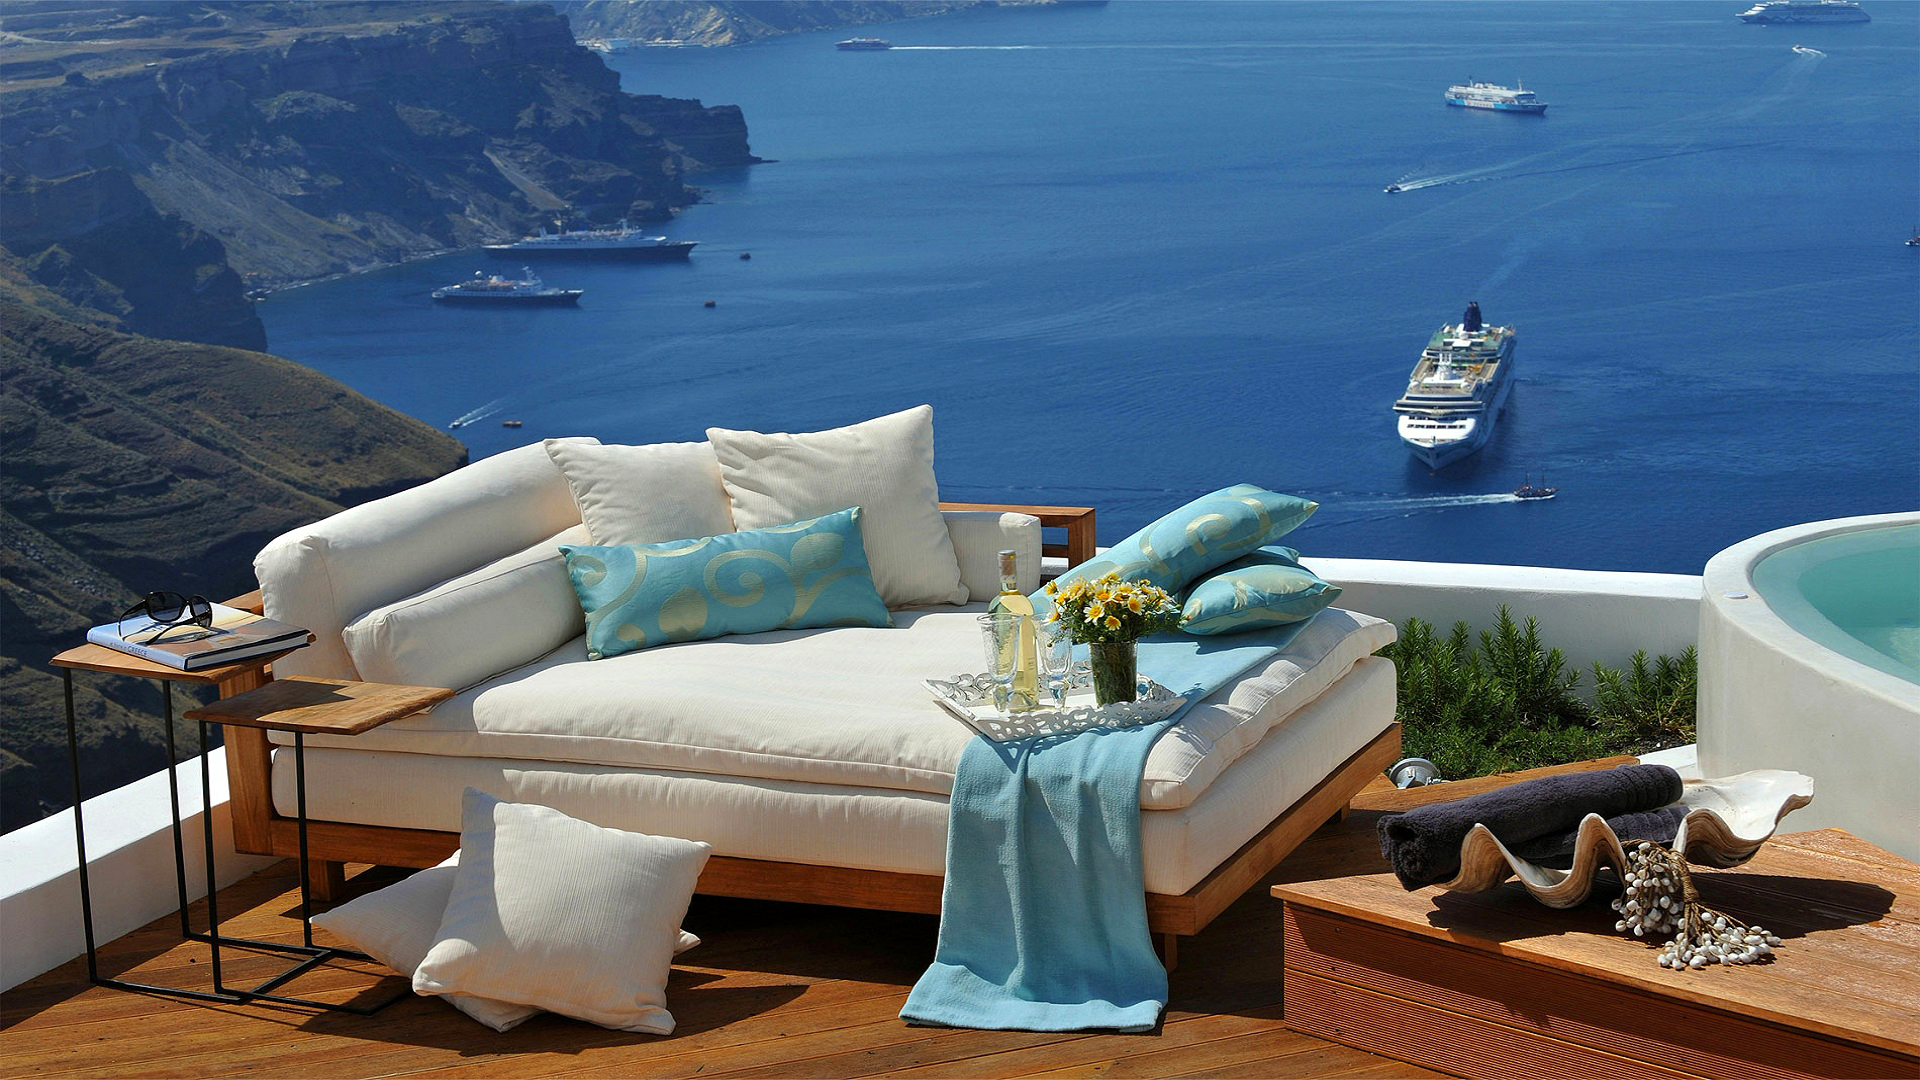 greece, sofa, photography, holiday, cruise ship, cushion, lounge, ocean, pillow, santorini, ship